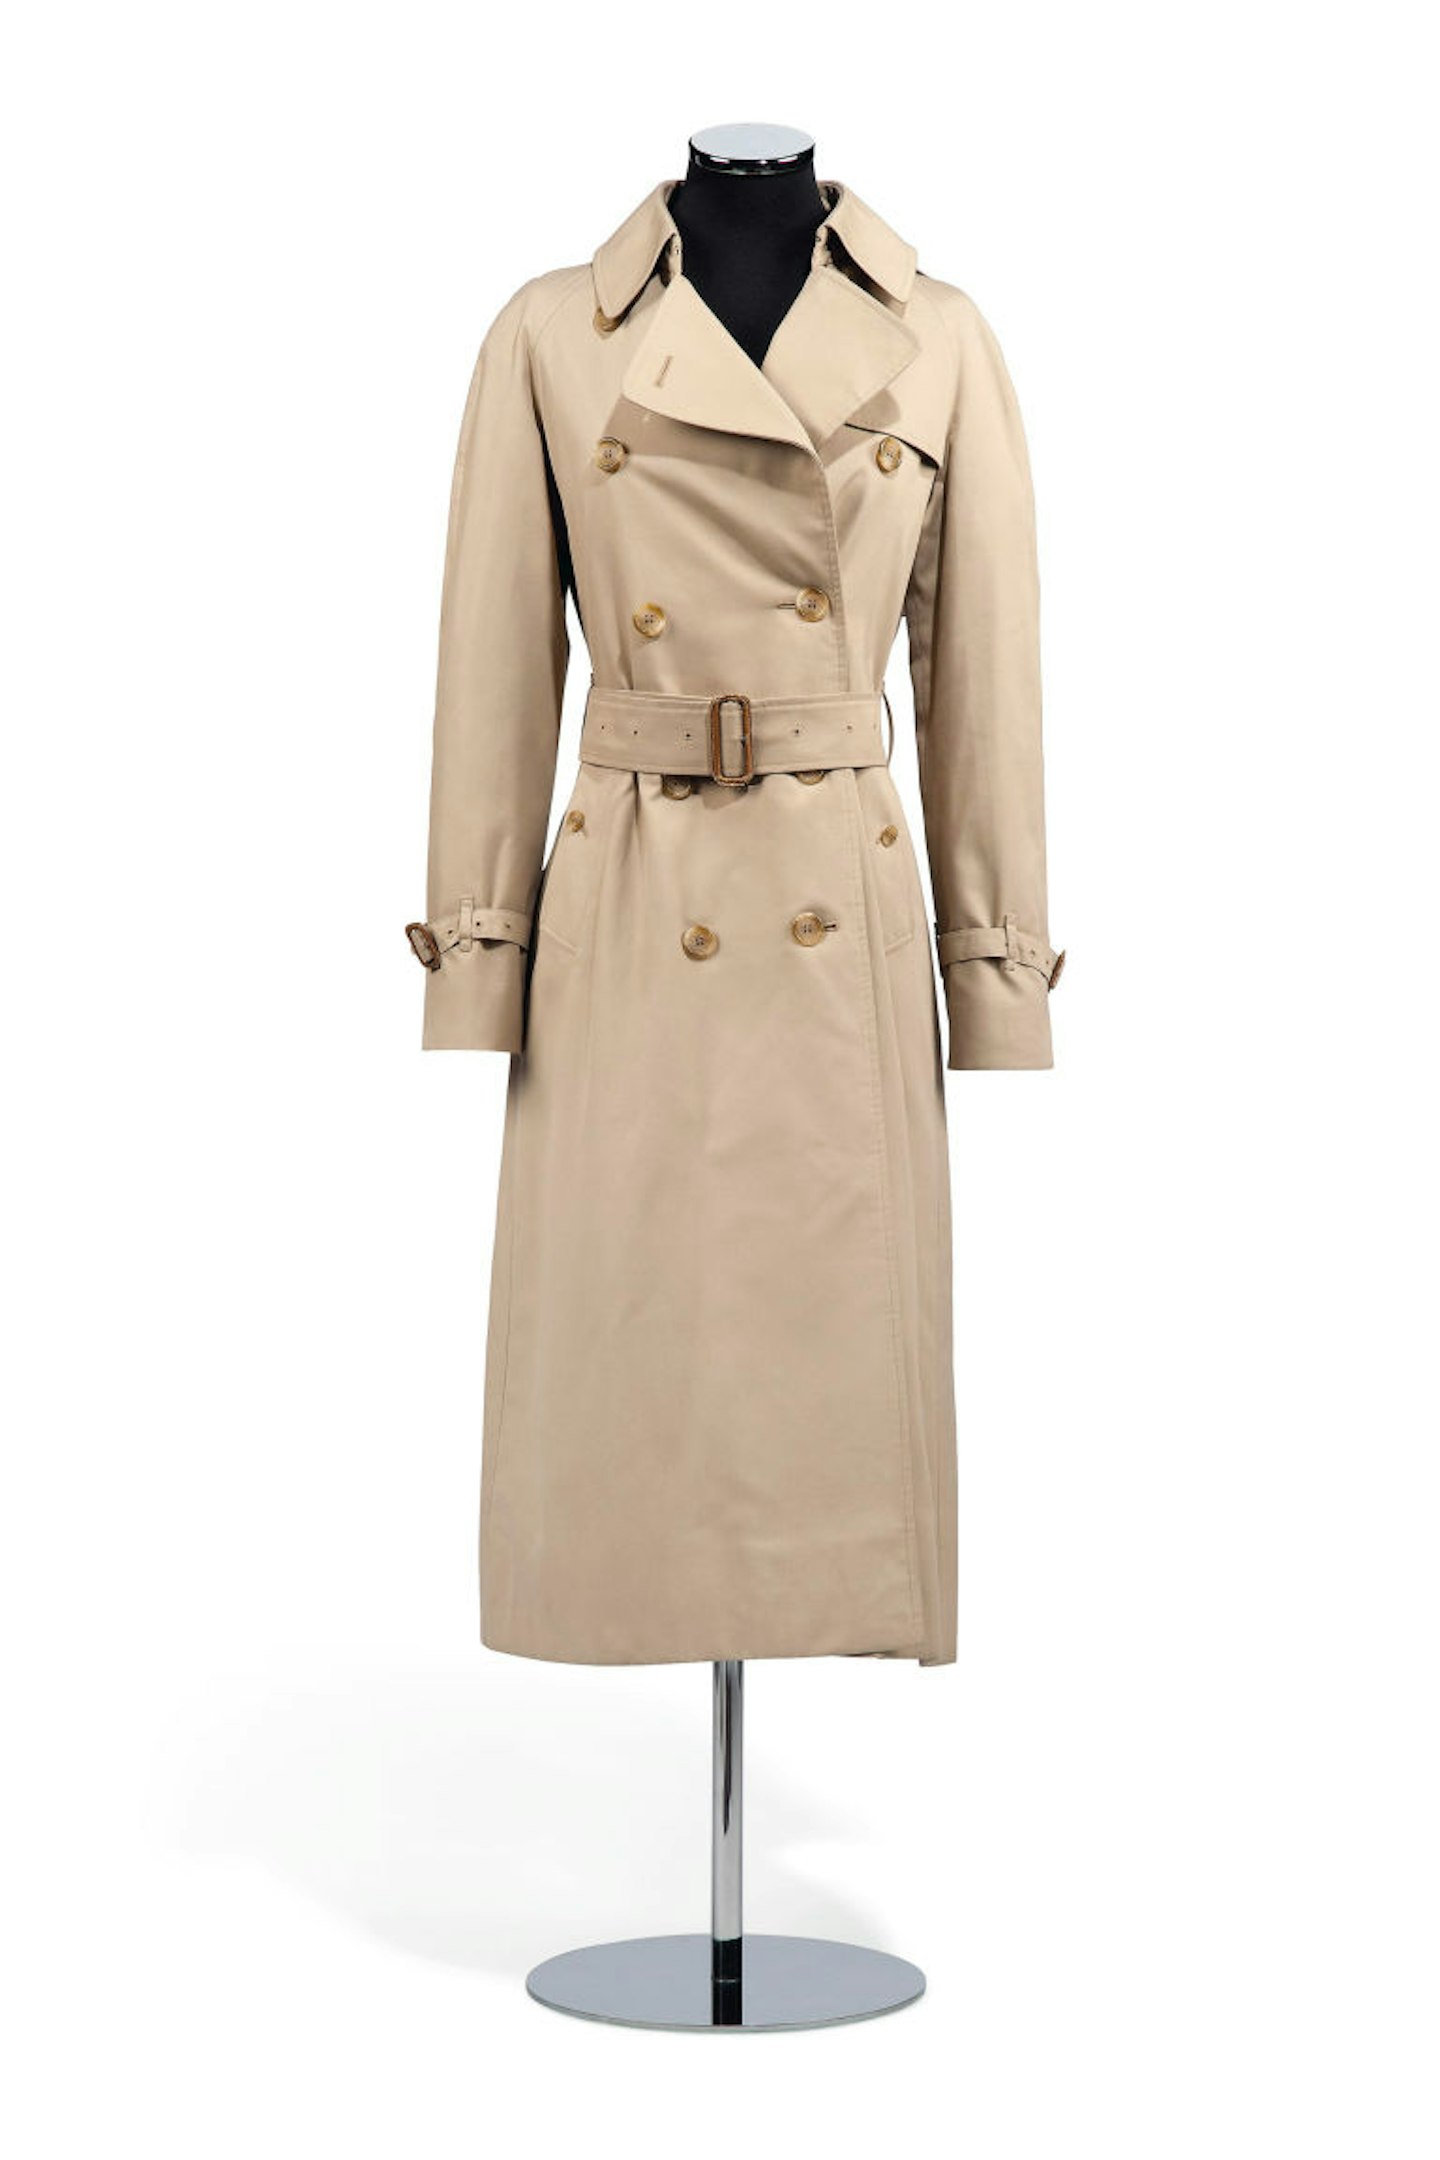 A trenchcoat worn by Audrey Hepburn